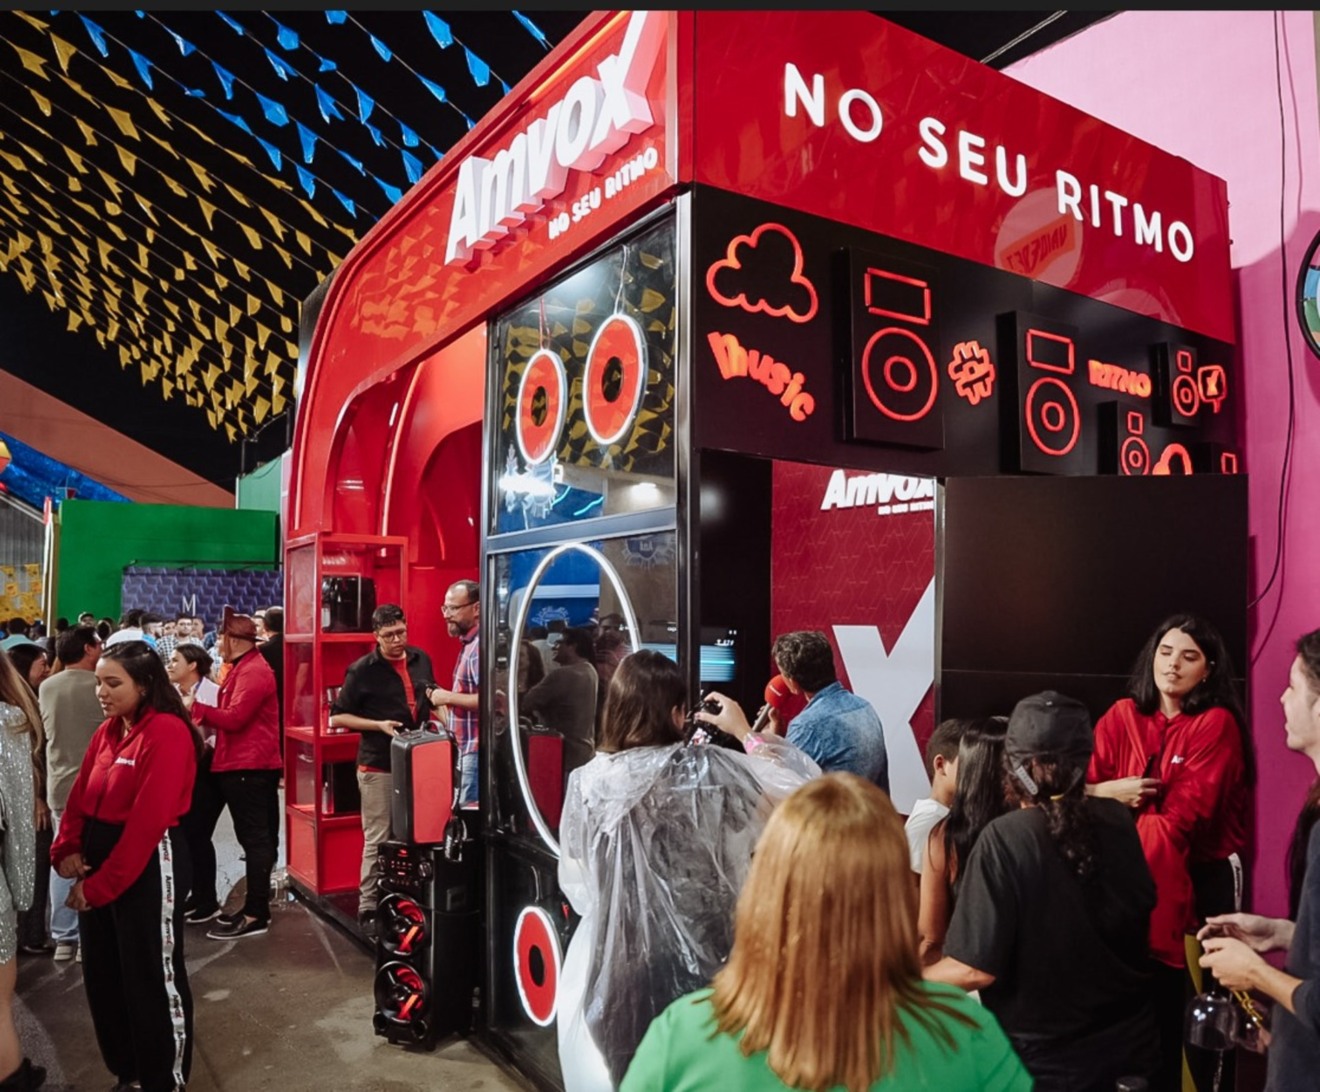 Participando do maior São João do mundo, empresa de eletroeletrônicos leva espaço gratuito e instagramável com cabine karaokê

